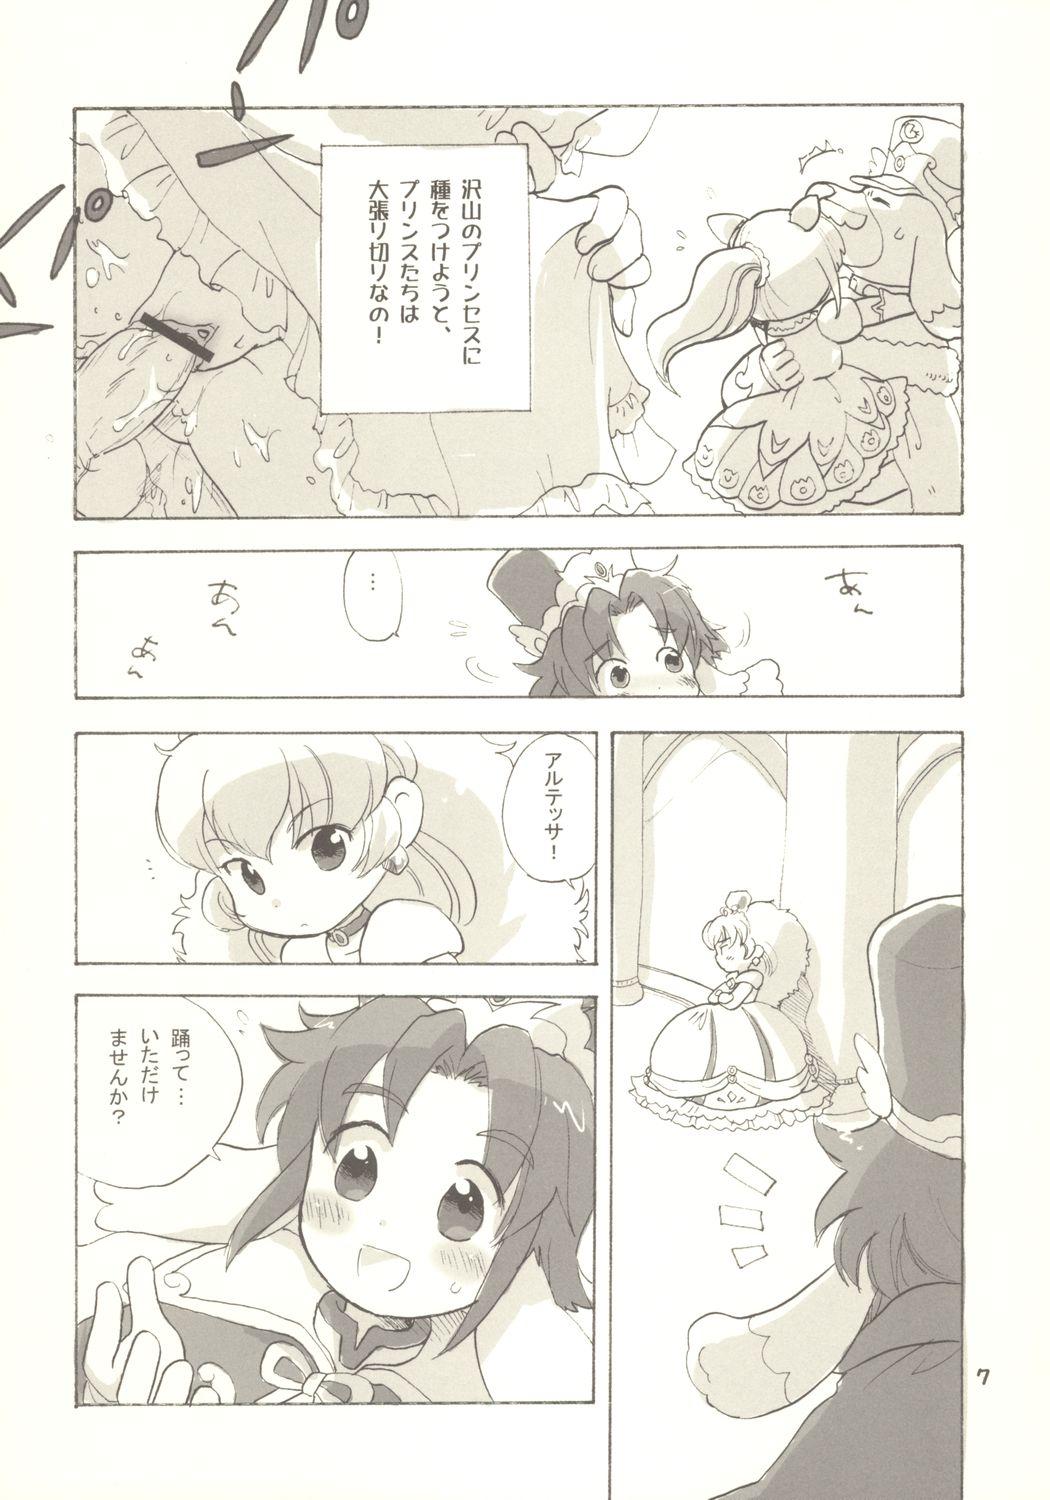 Assfingering Egao ni Nare - Please give me smiling face - Fushigiboshi no futagohime Swinger - Page 6